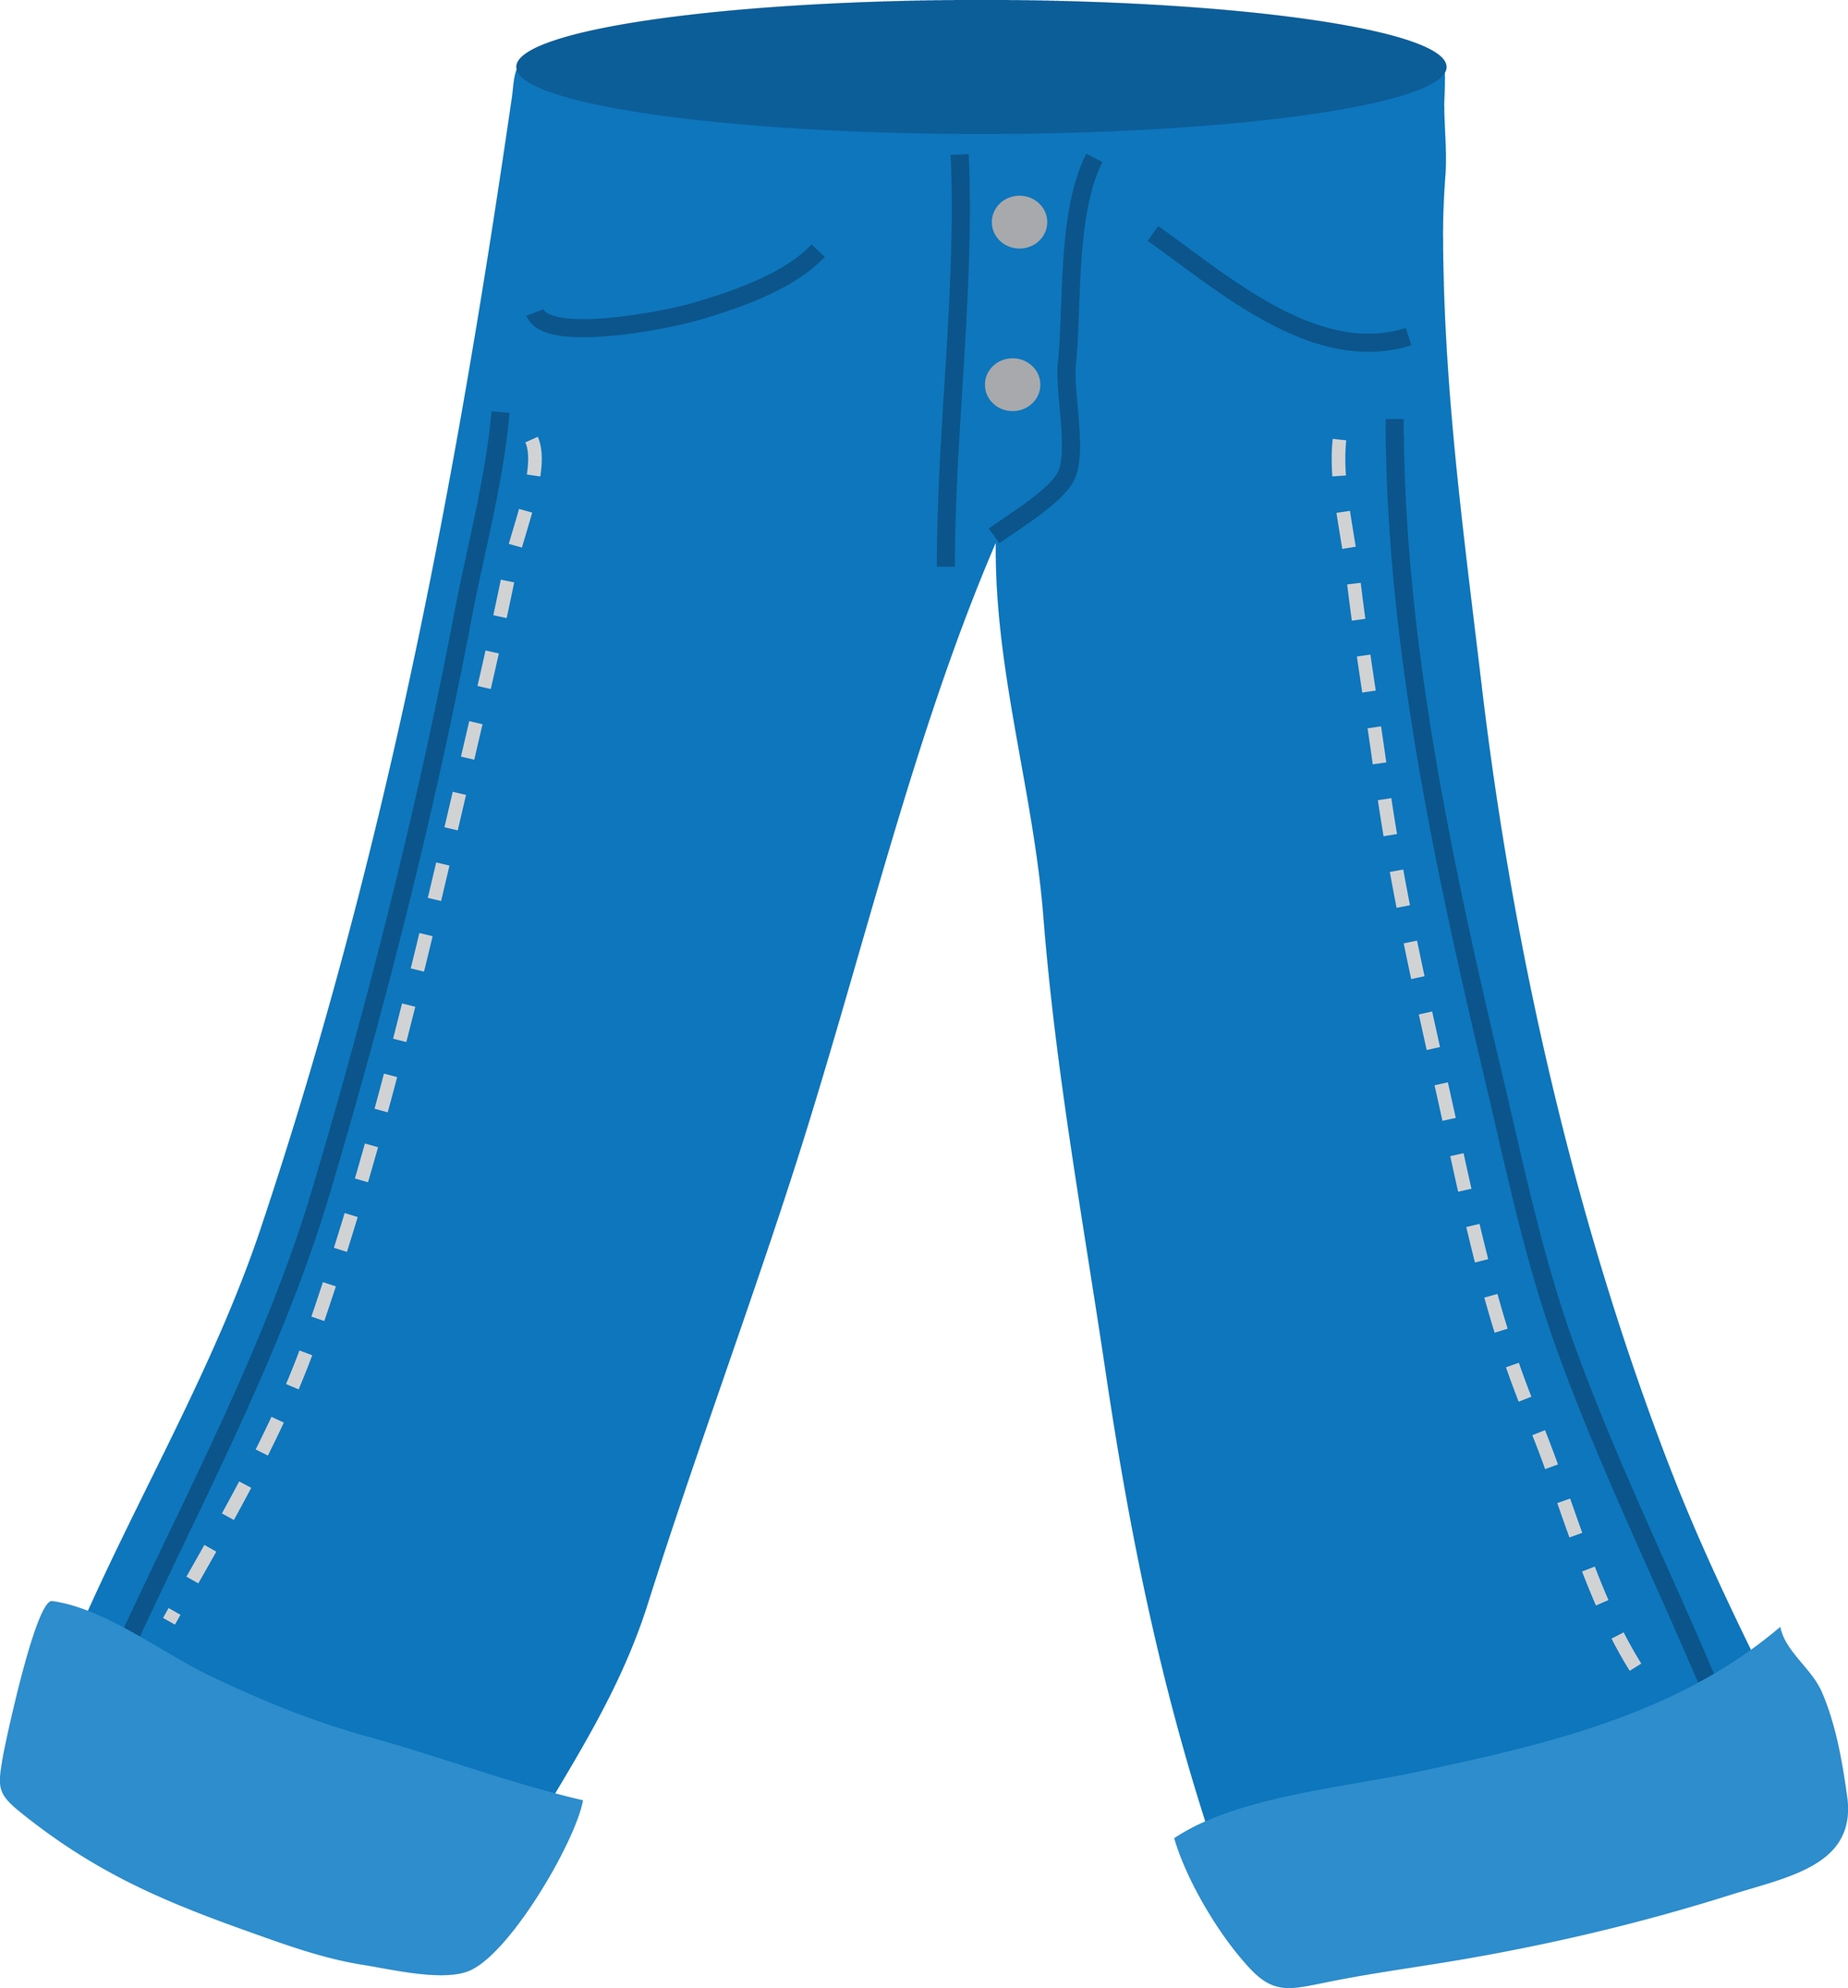 Pants clipart blue pants, Pants blue pants Transparent FREE